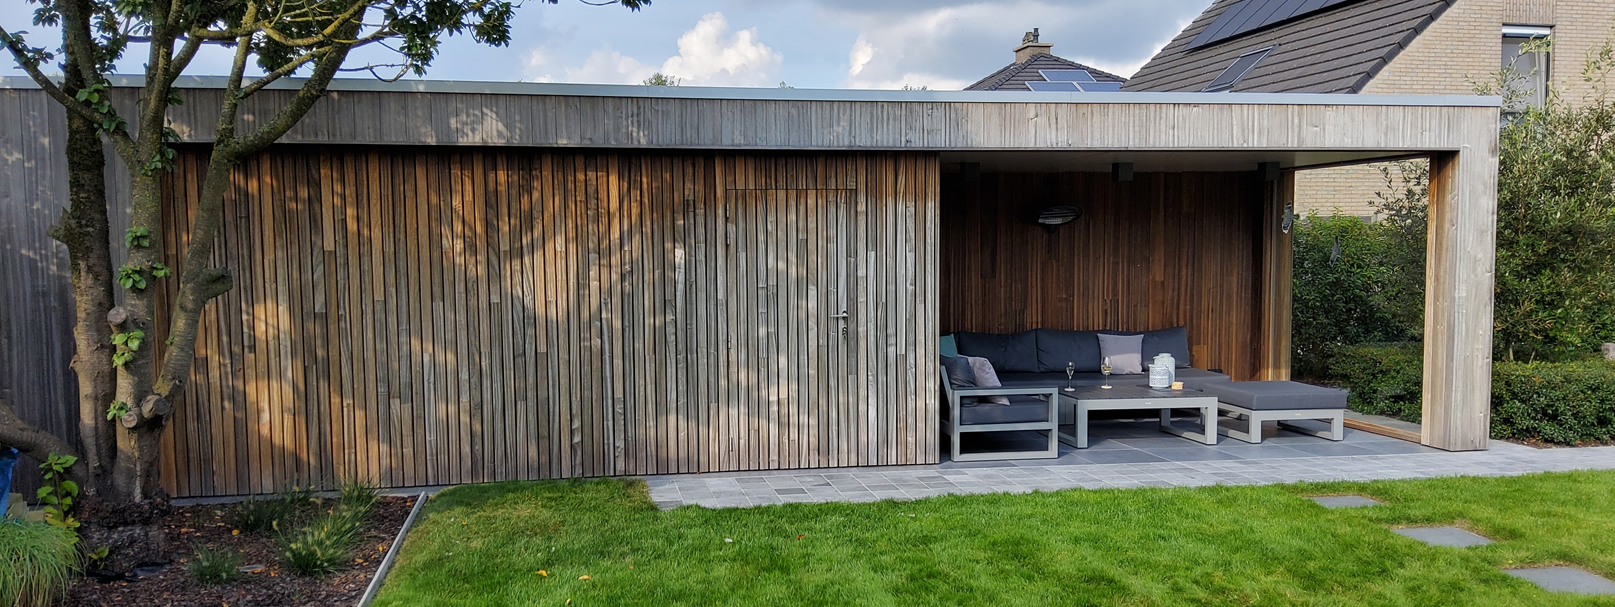 Moderne poolhouse in padoek met terrasoverkapping en berging met deur voor klant Oost Vlaanderen.